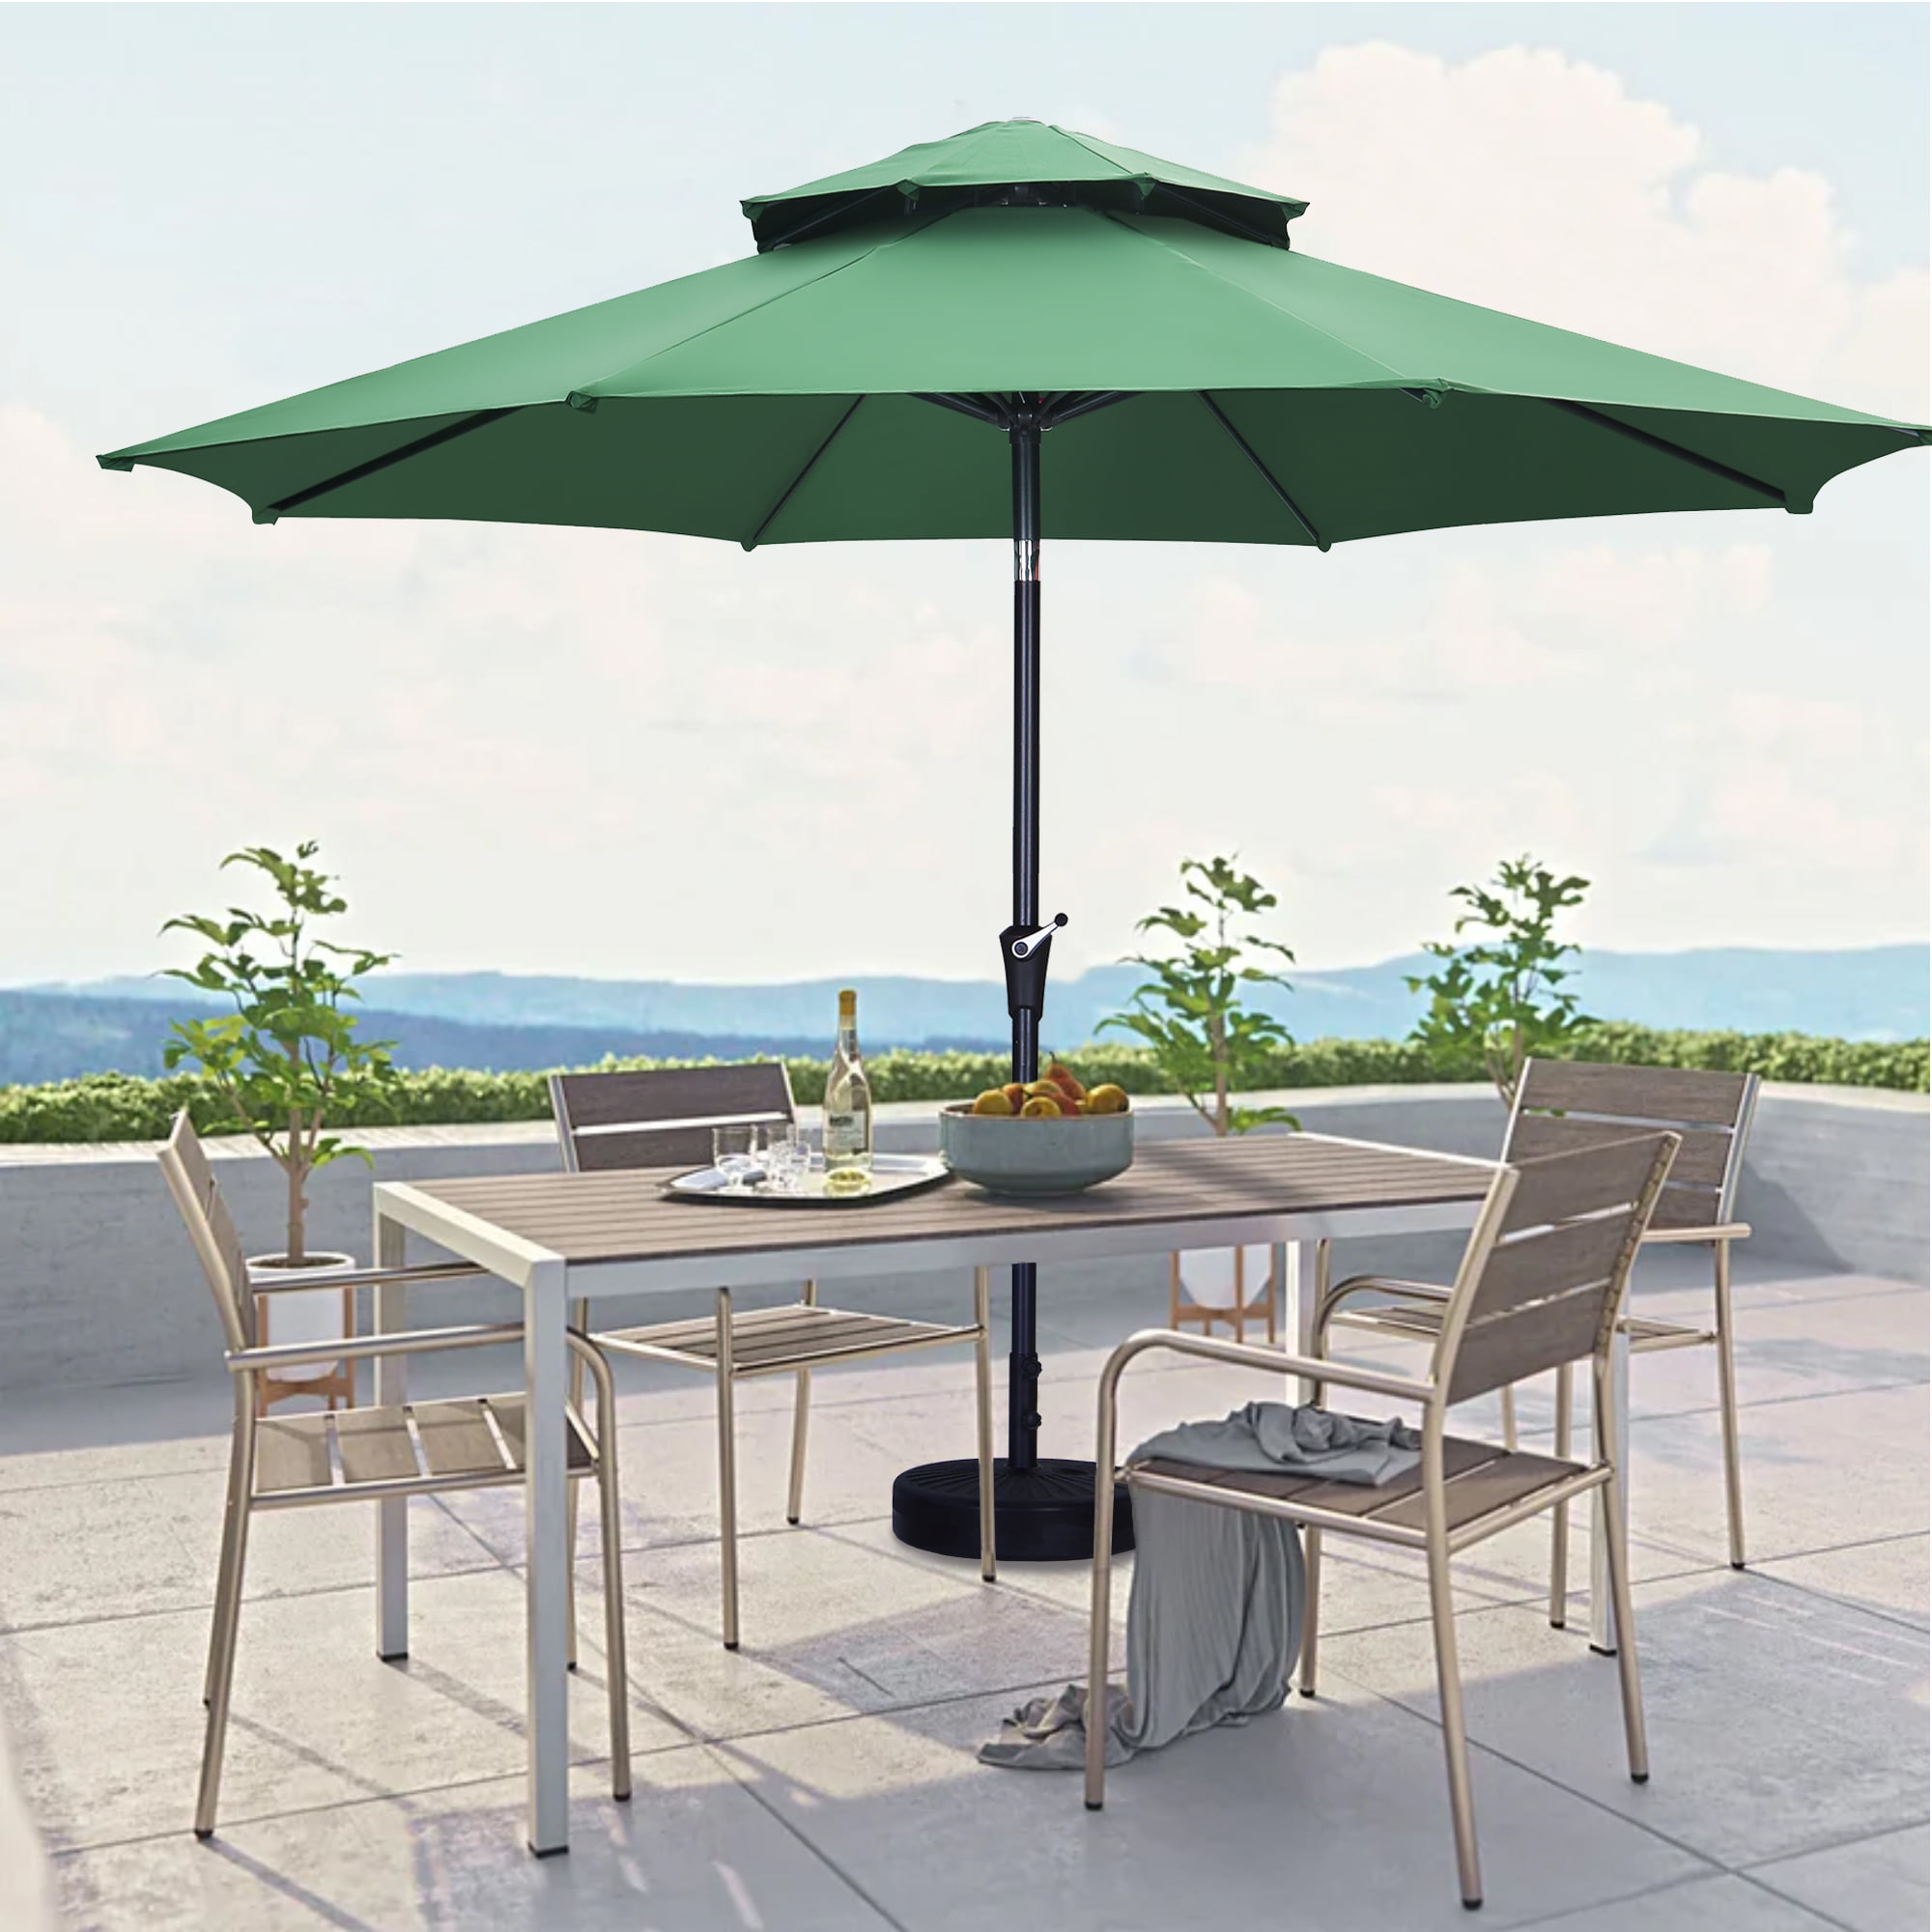 Used Green Abba Patio 6.6 x 9.8 Feet Rectangular Outdoor Patio Table Umbrella 